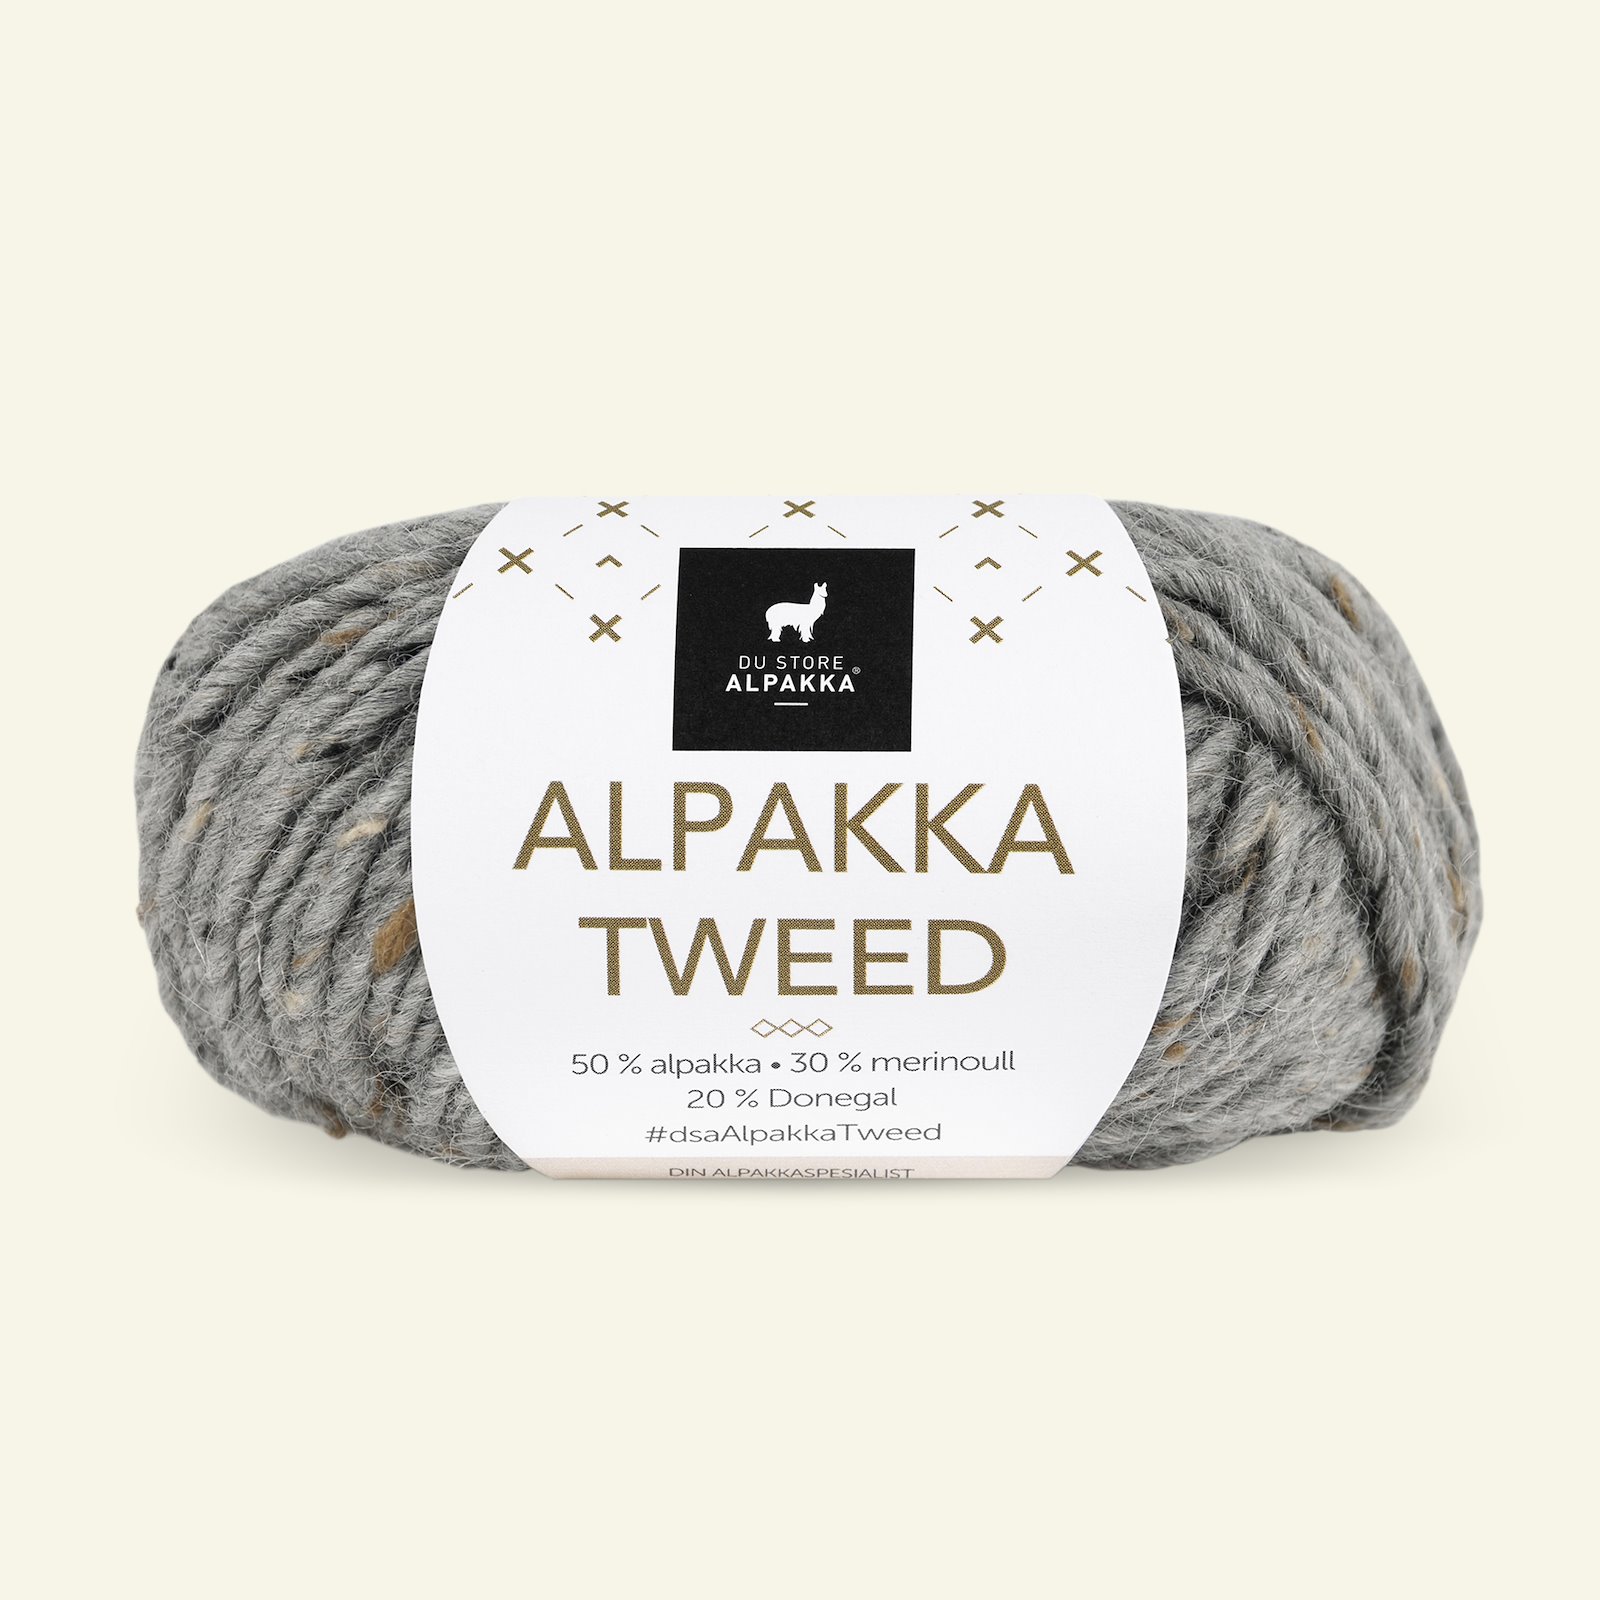 Du Store Alpakka, tweed uldgarn "Alpakka Tweed", grå (101) 90000520_pack